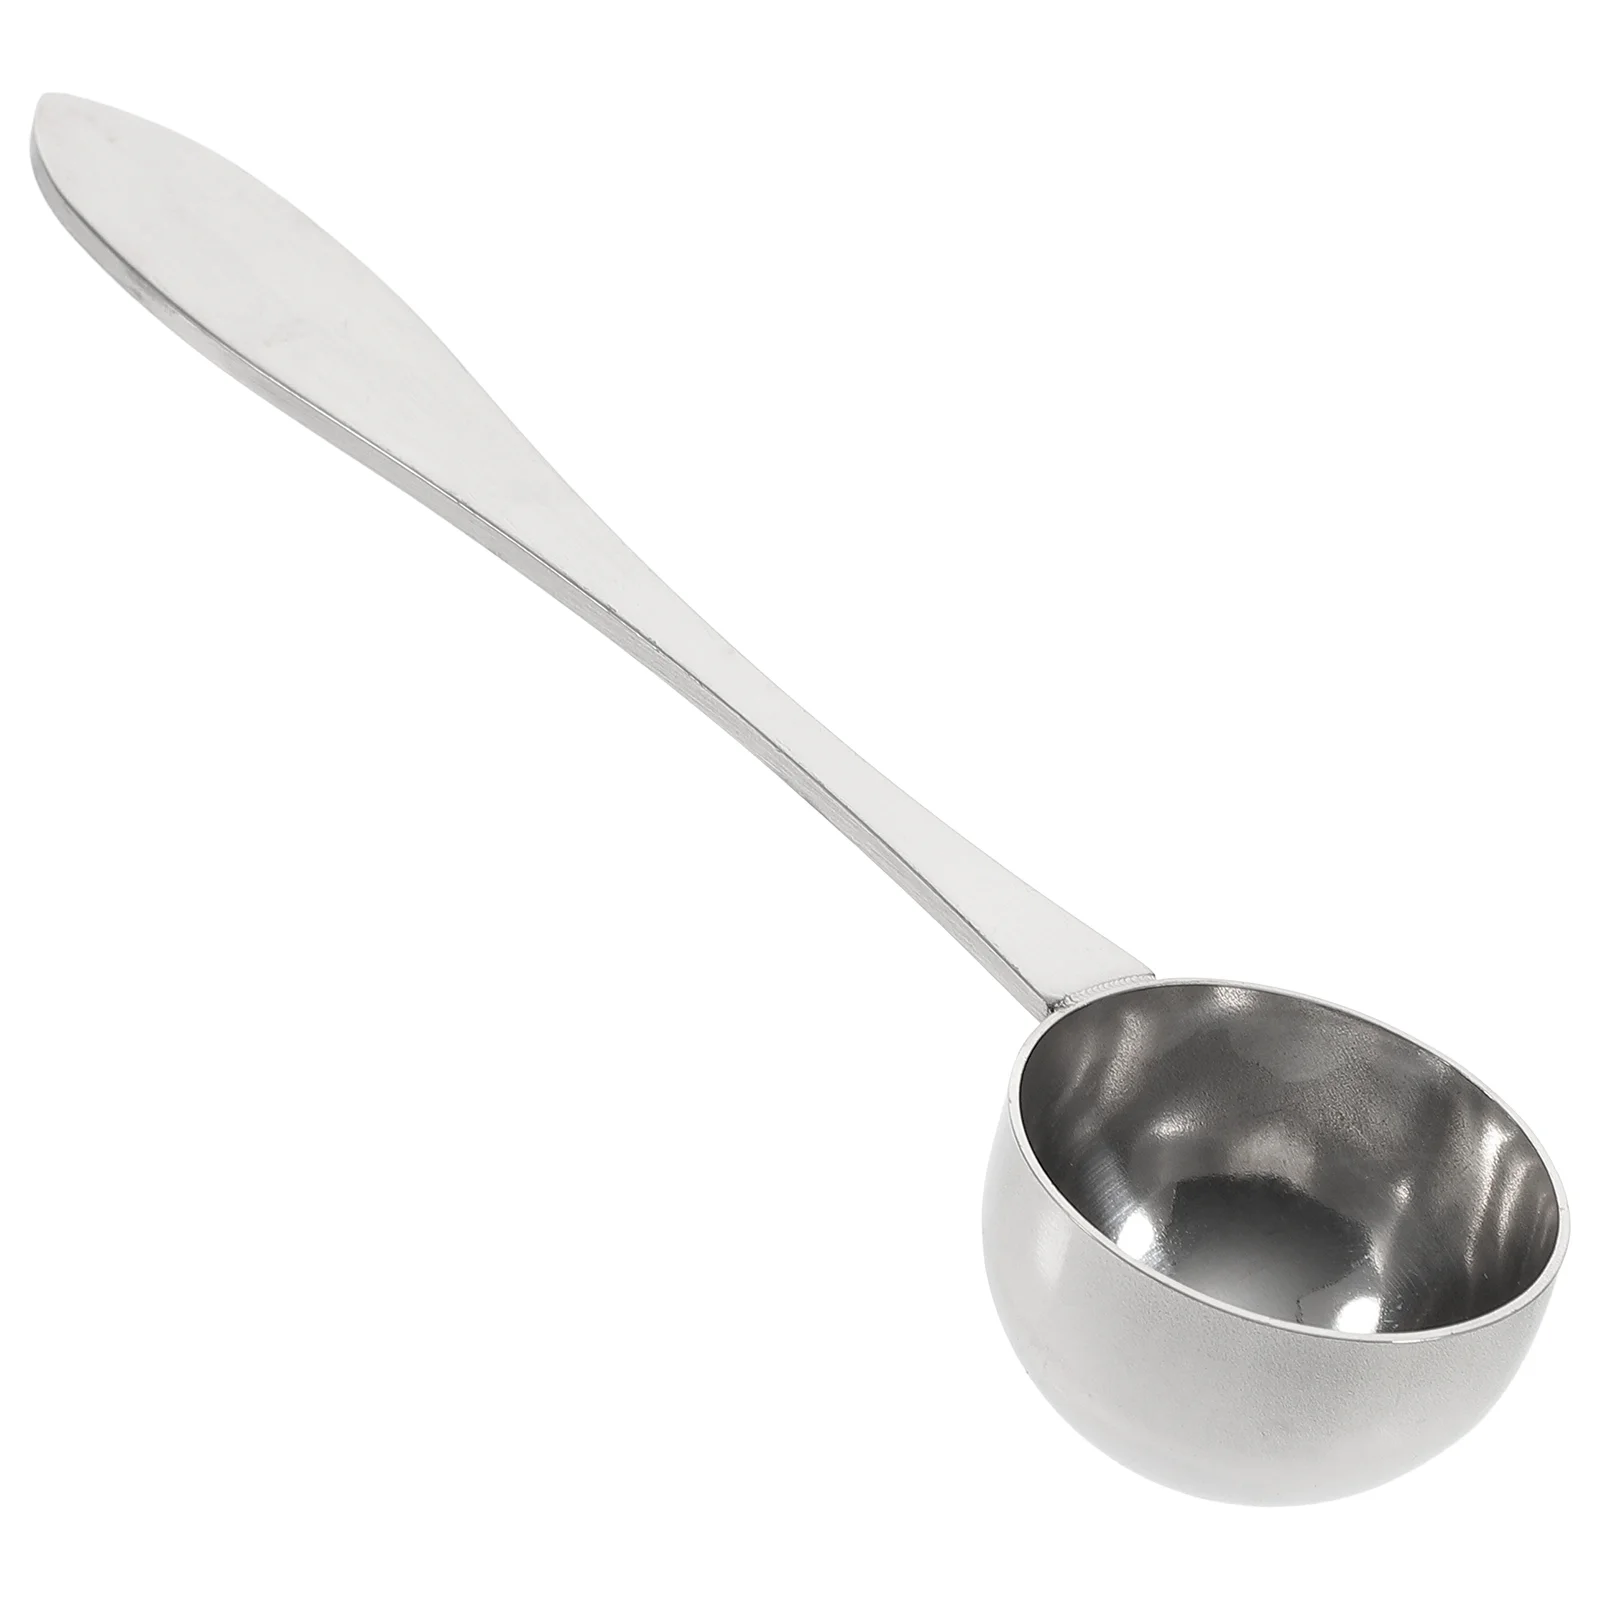 

Measuring Spoon Spoons Scoop Coffee Mini Metal Powderkitchen Teaspoons Salt Measure Steel Stainless Cup Serving Sealing Sugar